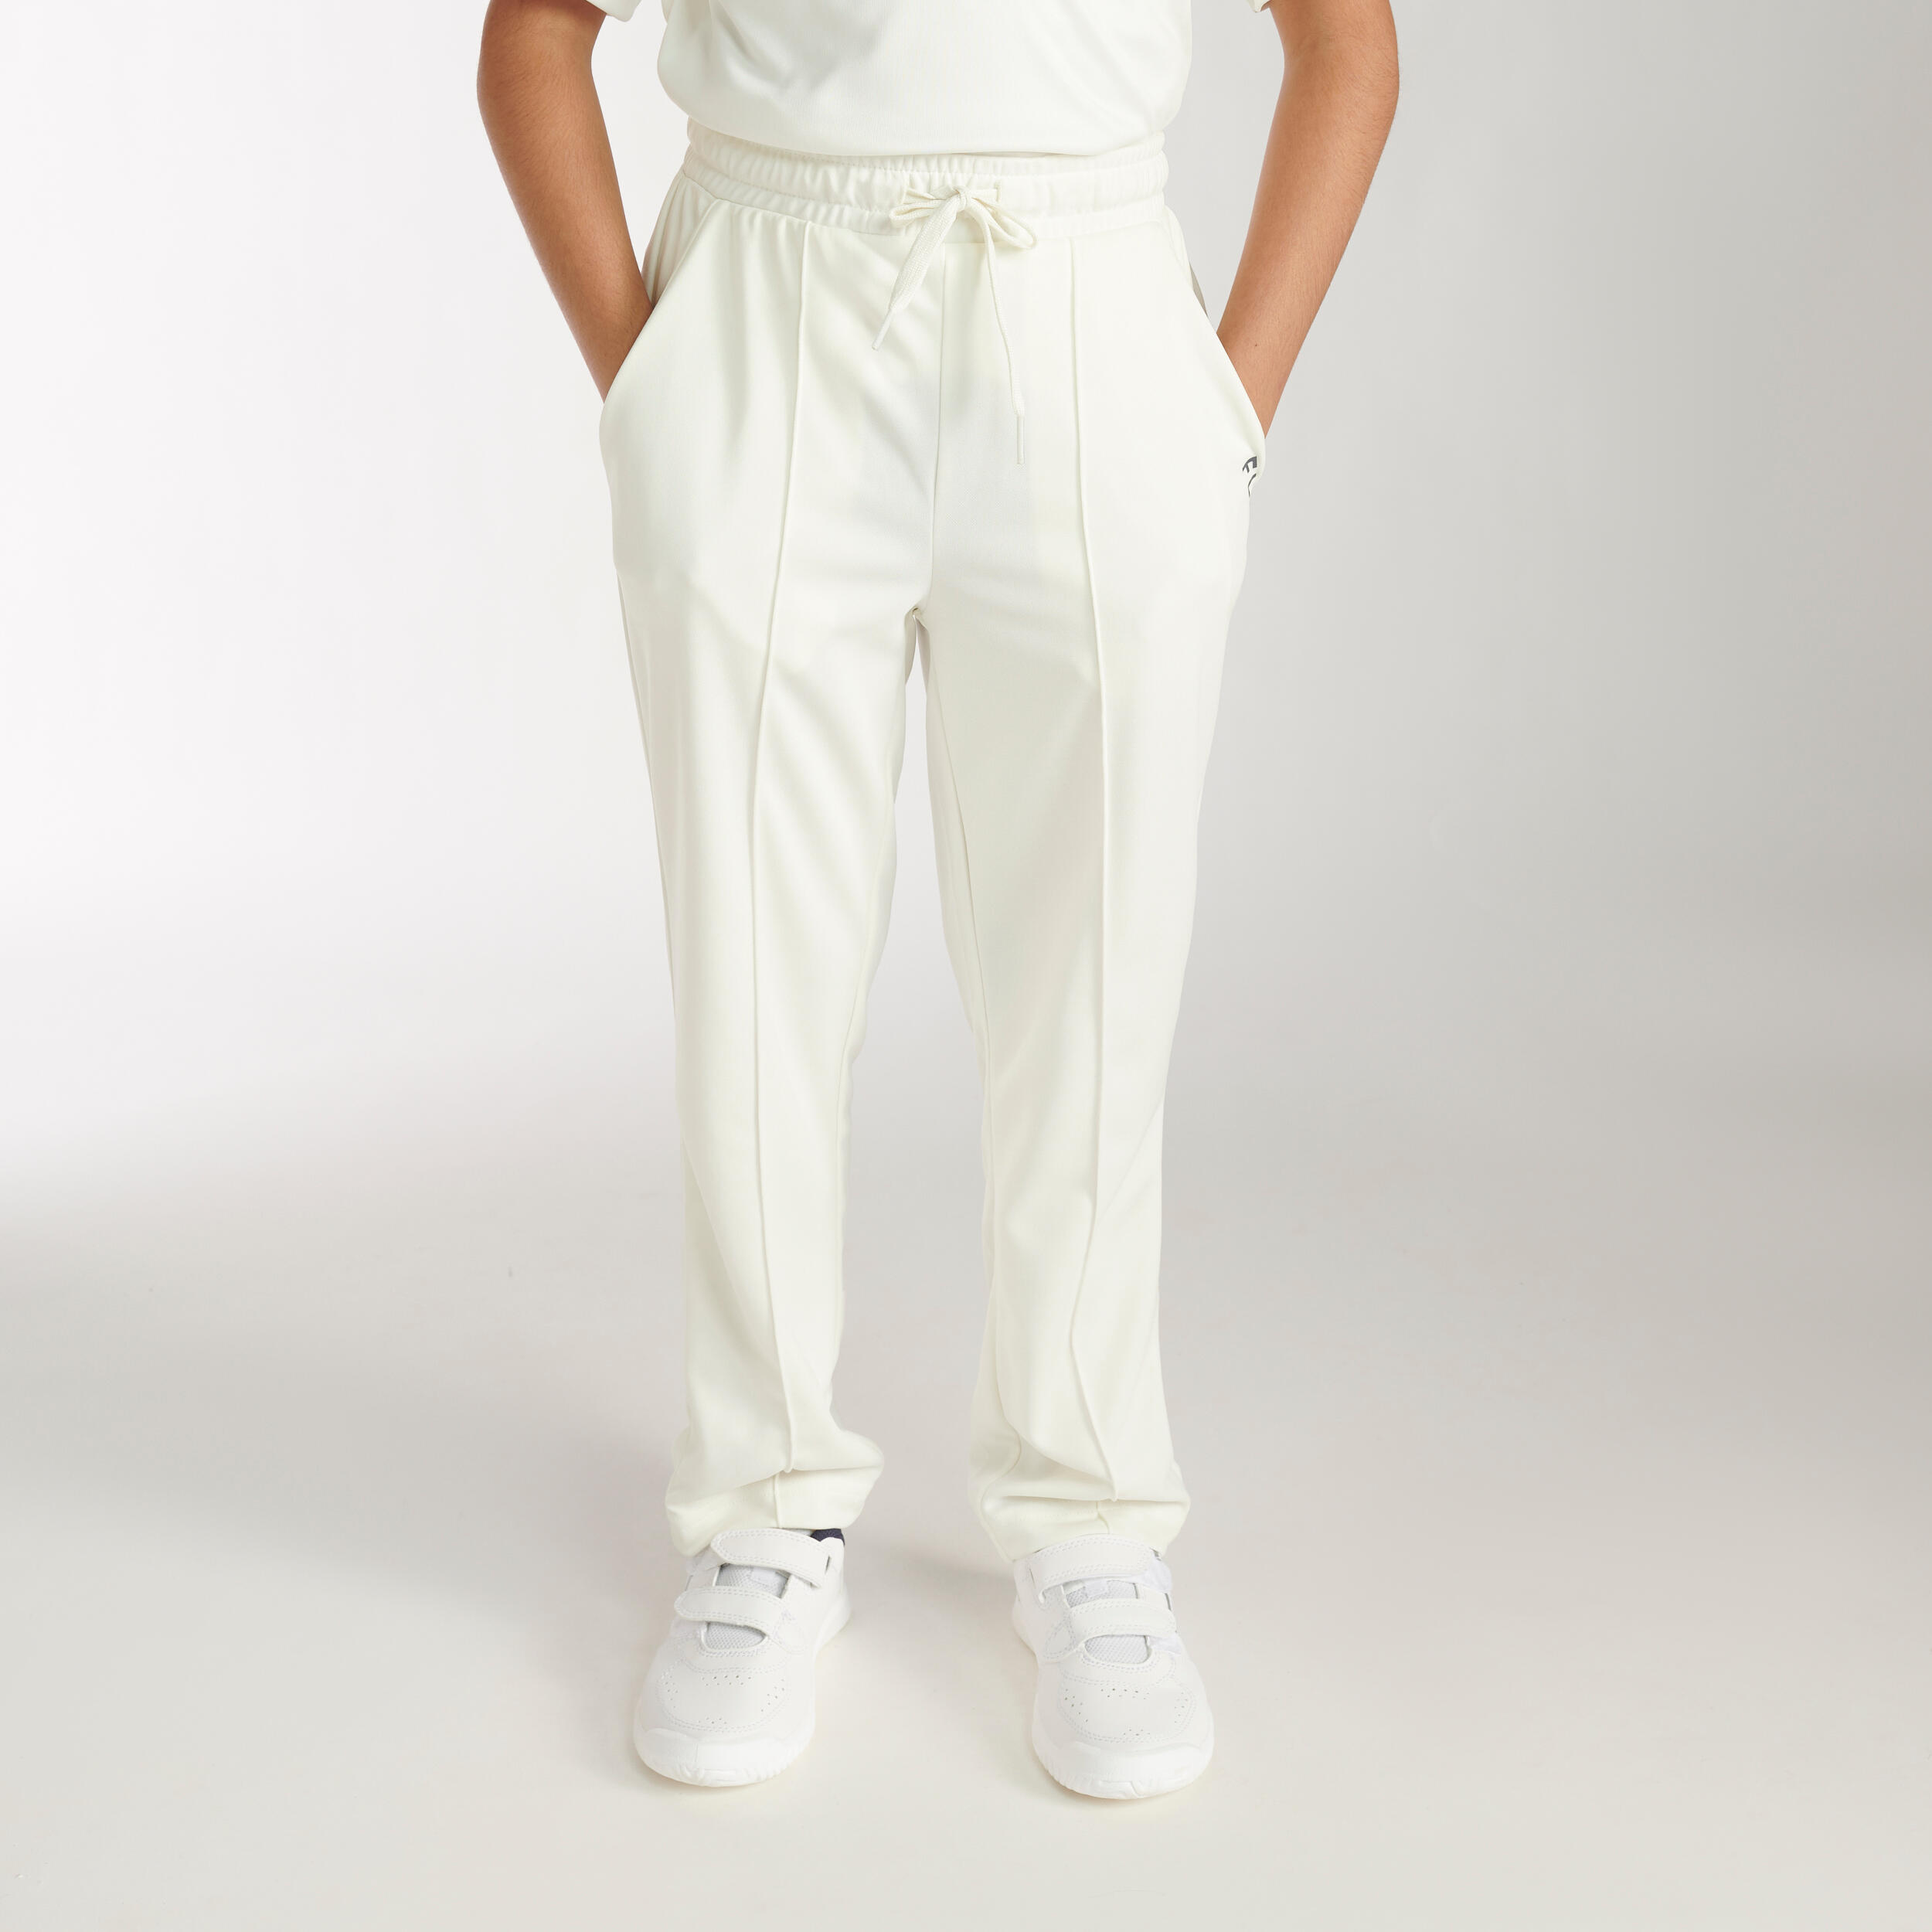 Boys Slazenger Training Stylish Aero Cricket Trousers Sizes Age from 5 to  13 Yrs | eBay